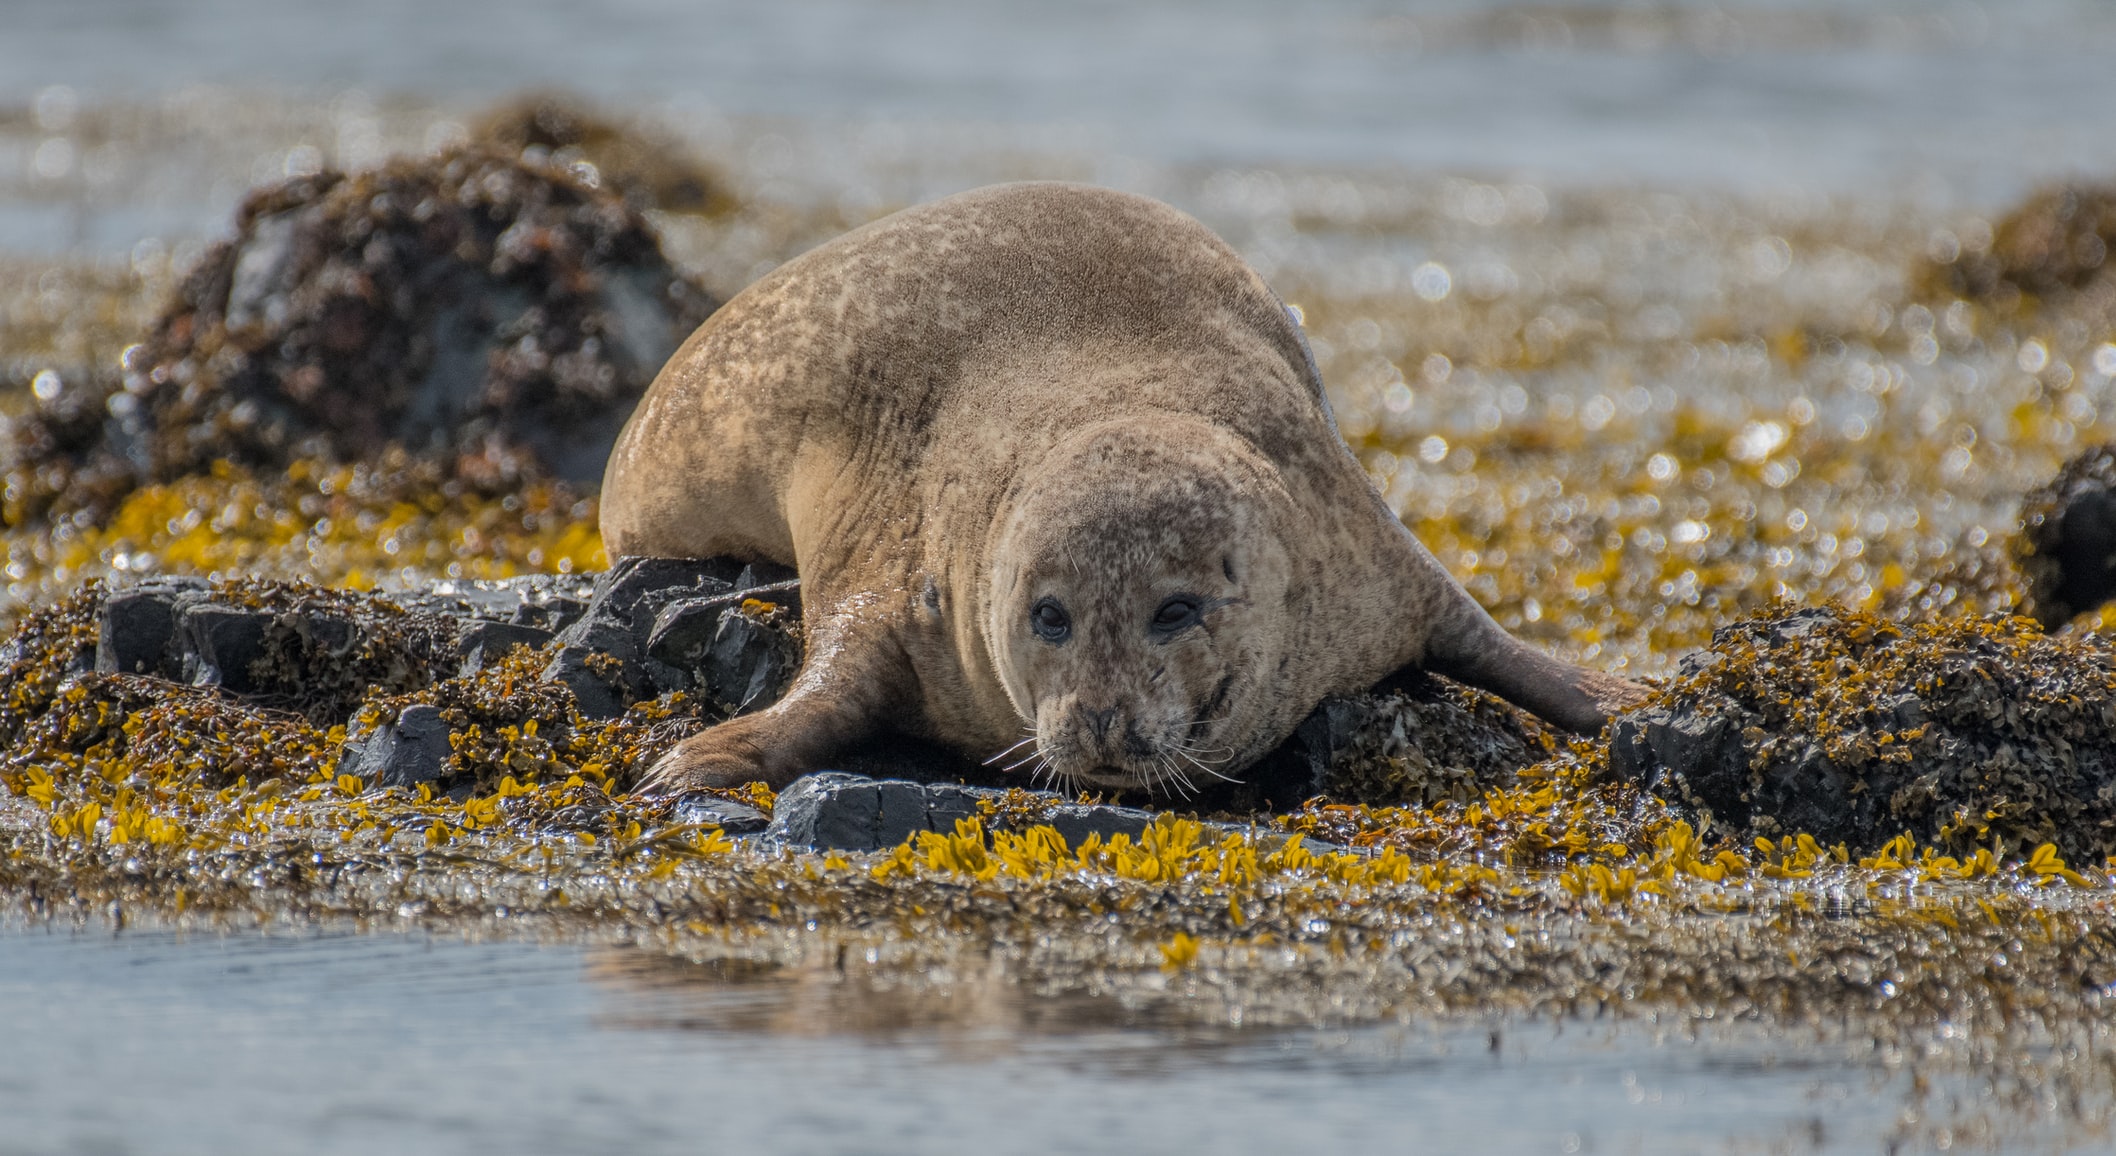 冰岛北部的华姆斯唐吉小镇是世界上观赏海豹的最佳地点之一